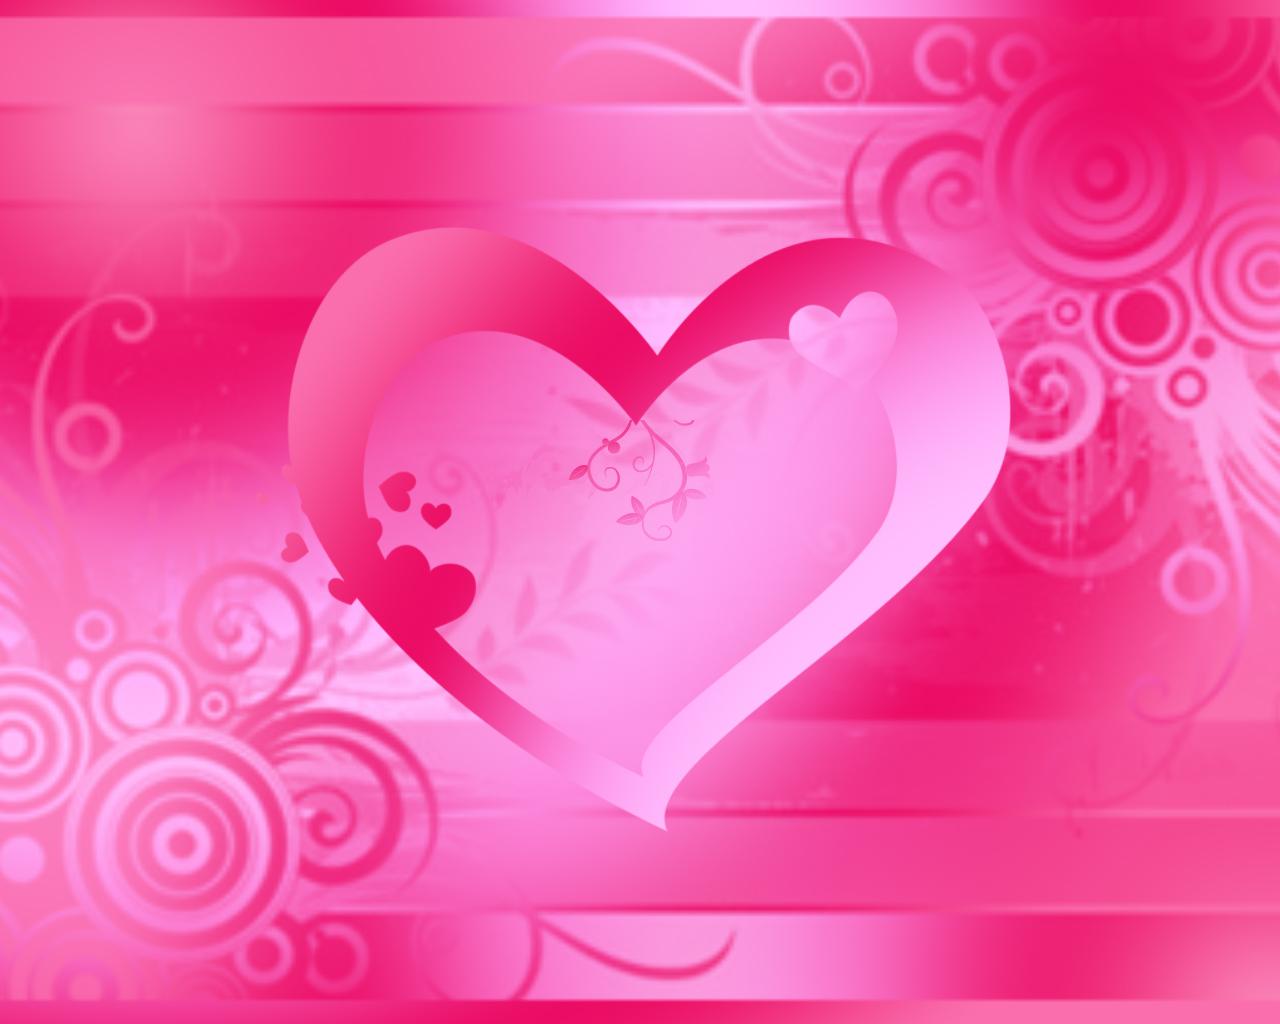 sfondi di fiori di colore rosa,cuore,rosa,amore,rosso,san valentino